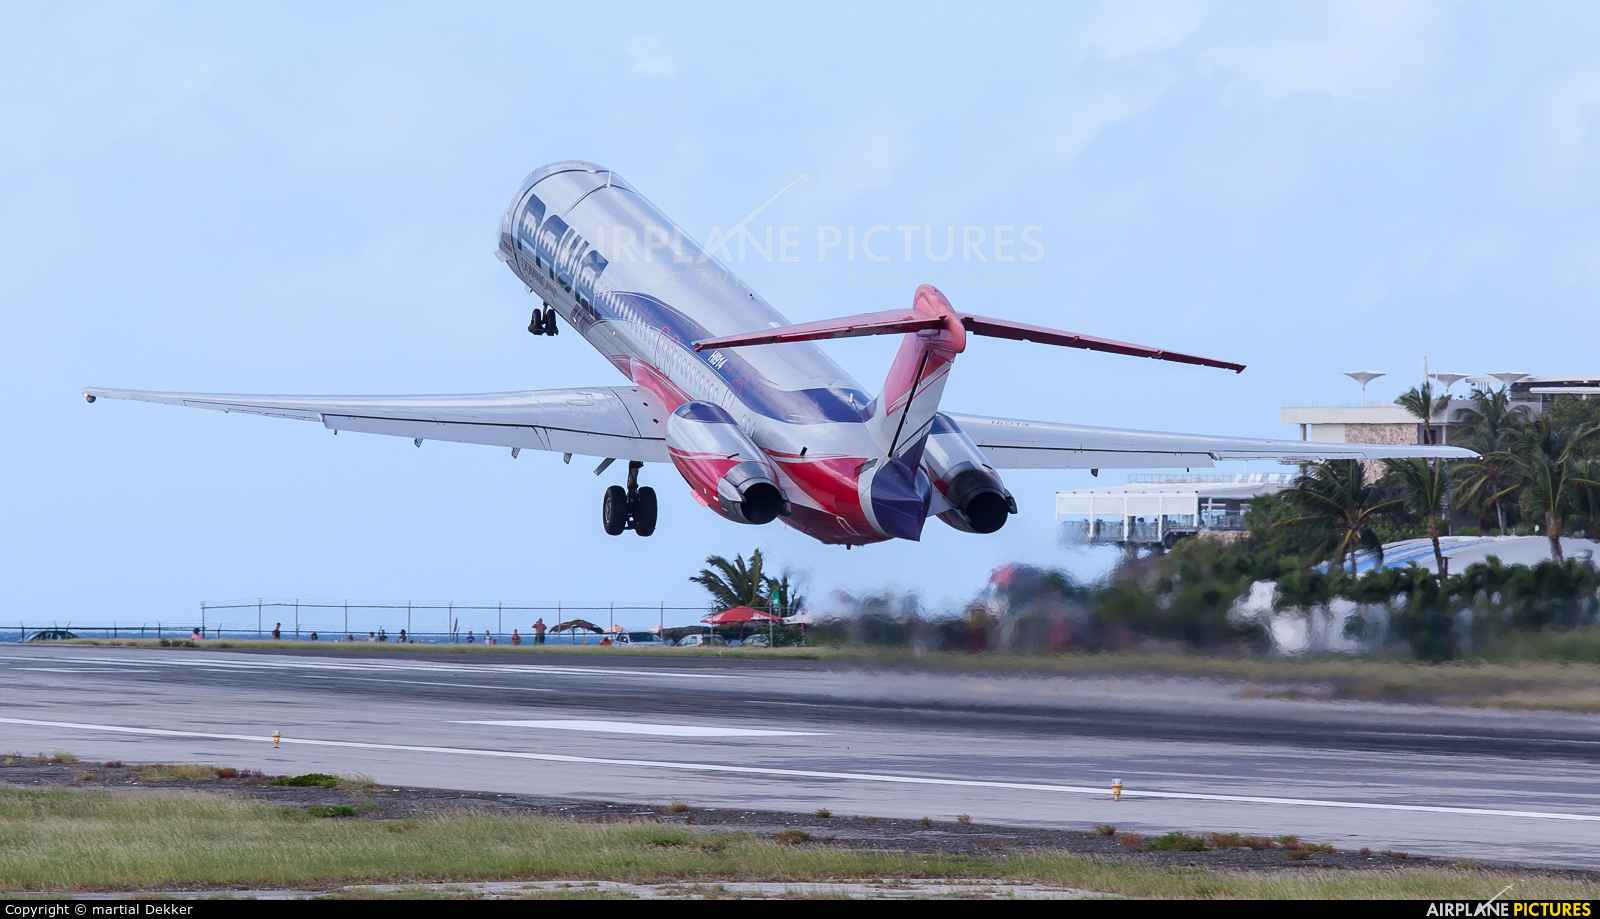 PAWA Dominicana HI914 aircraft at Sint Maarten - Princess Juliana Intl